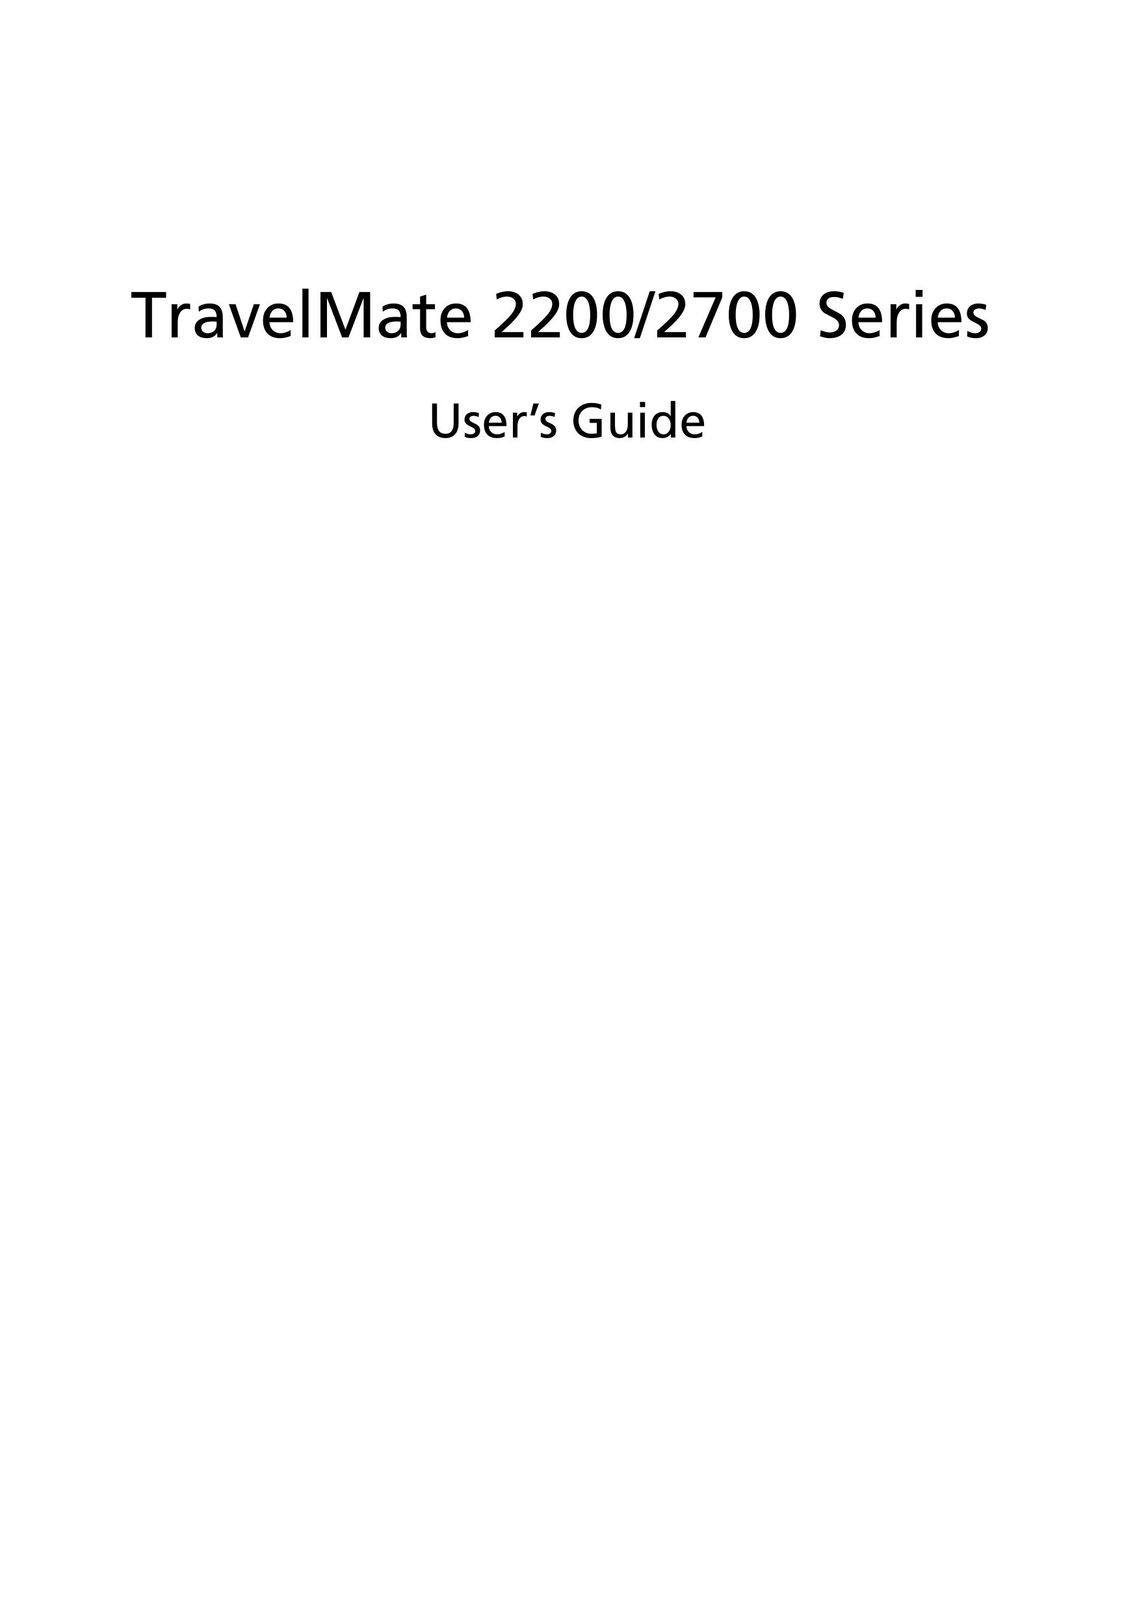 Acer 2200 Series Laptop User Manual